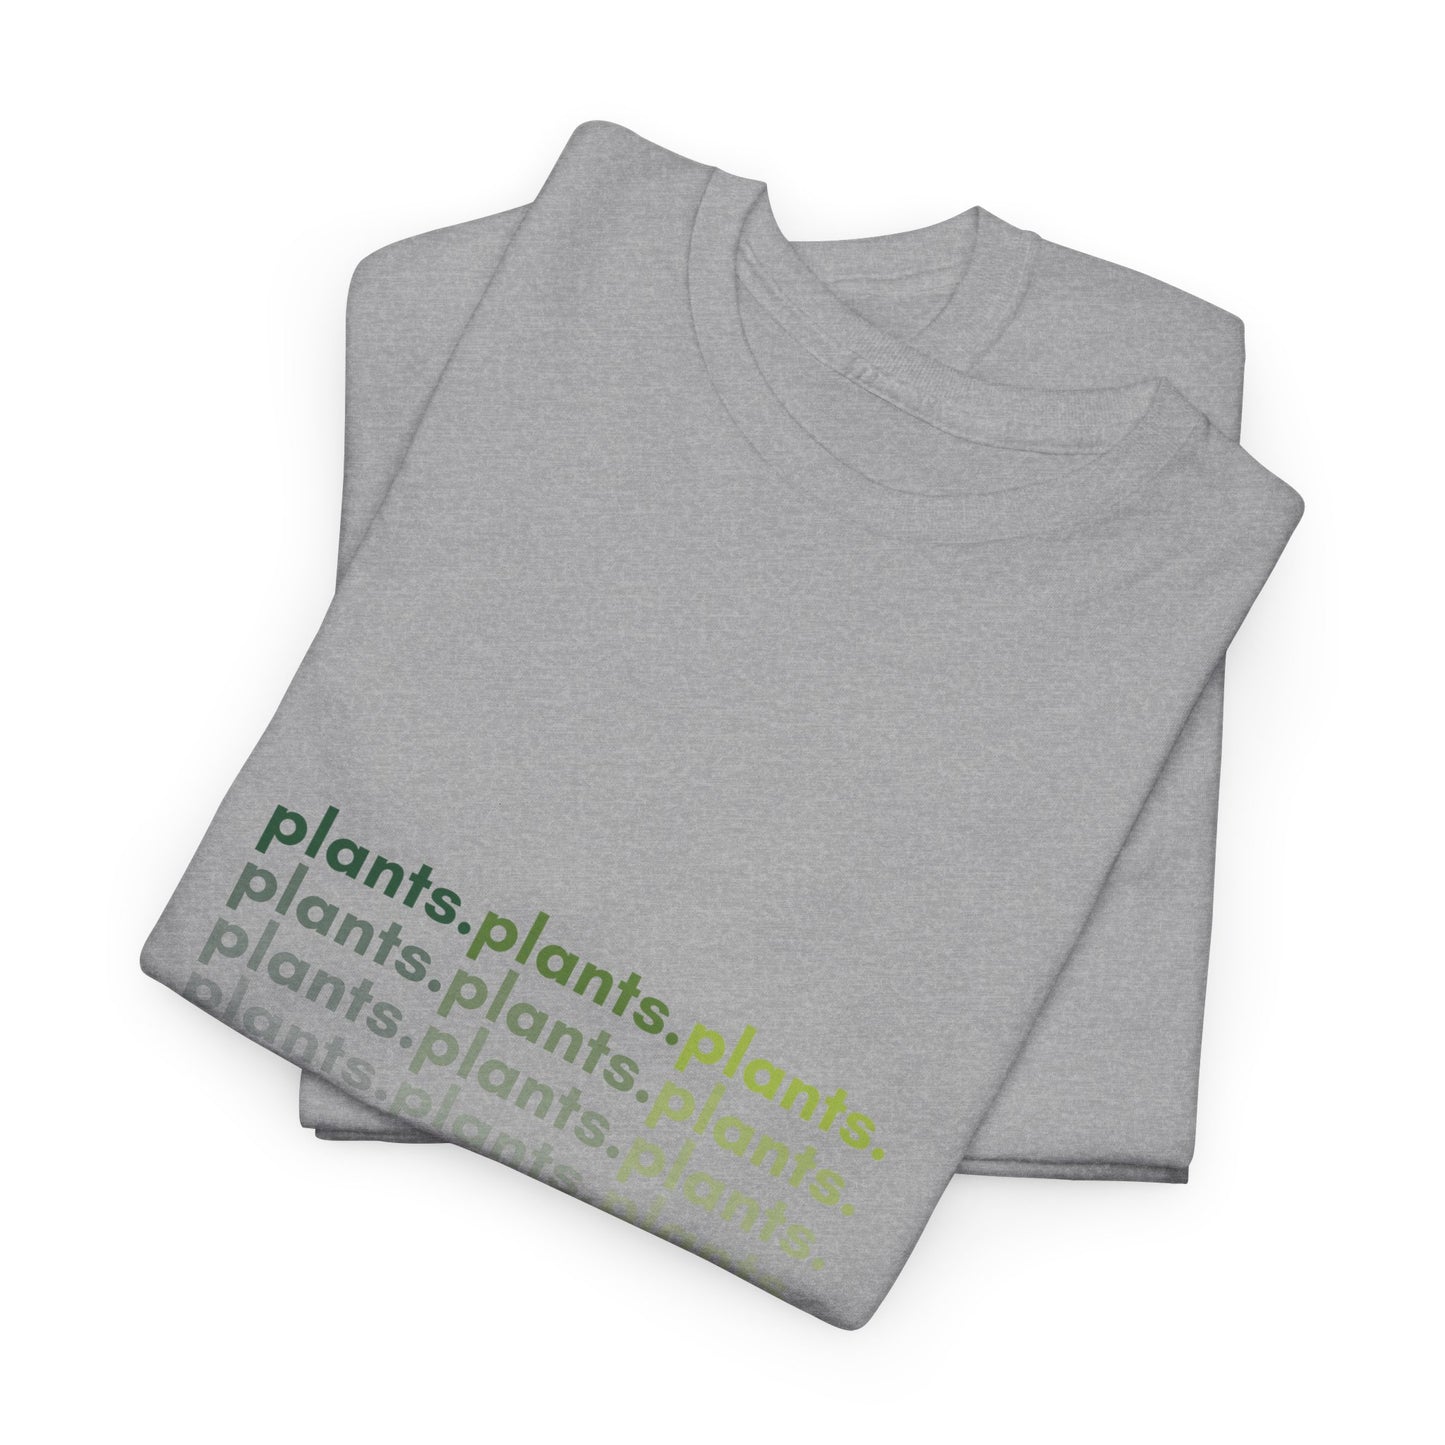 "plants.plants.plants" | unisex Shirt